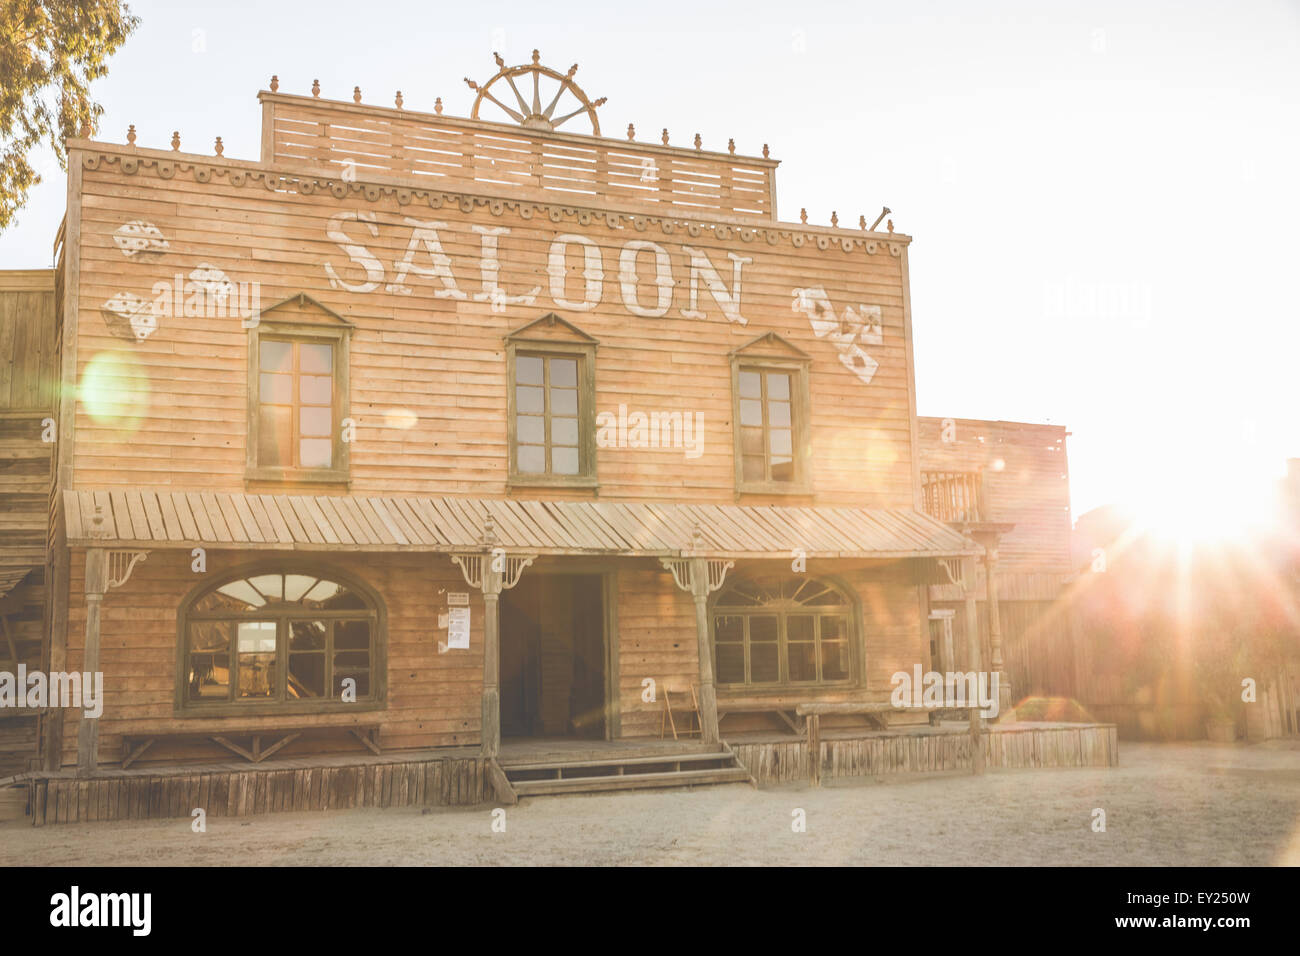 Hölzerne Saloon im wilden Westen Film set, Fort Bravo, Tabernas, Almeria, Spanien Stockfoto